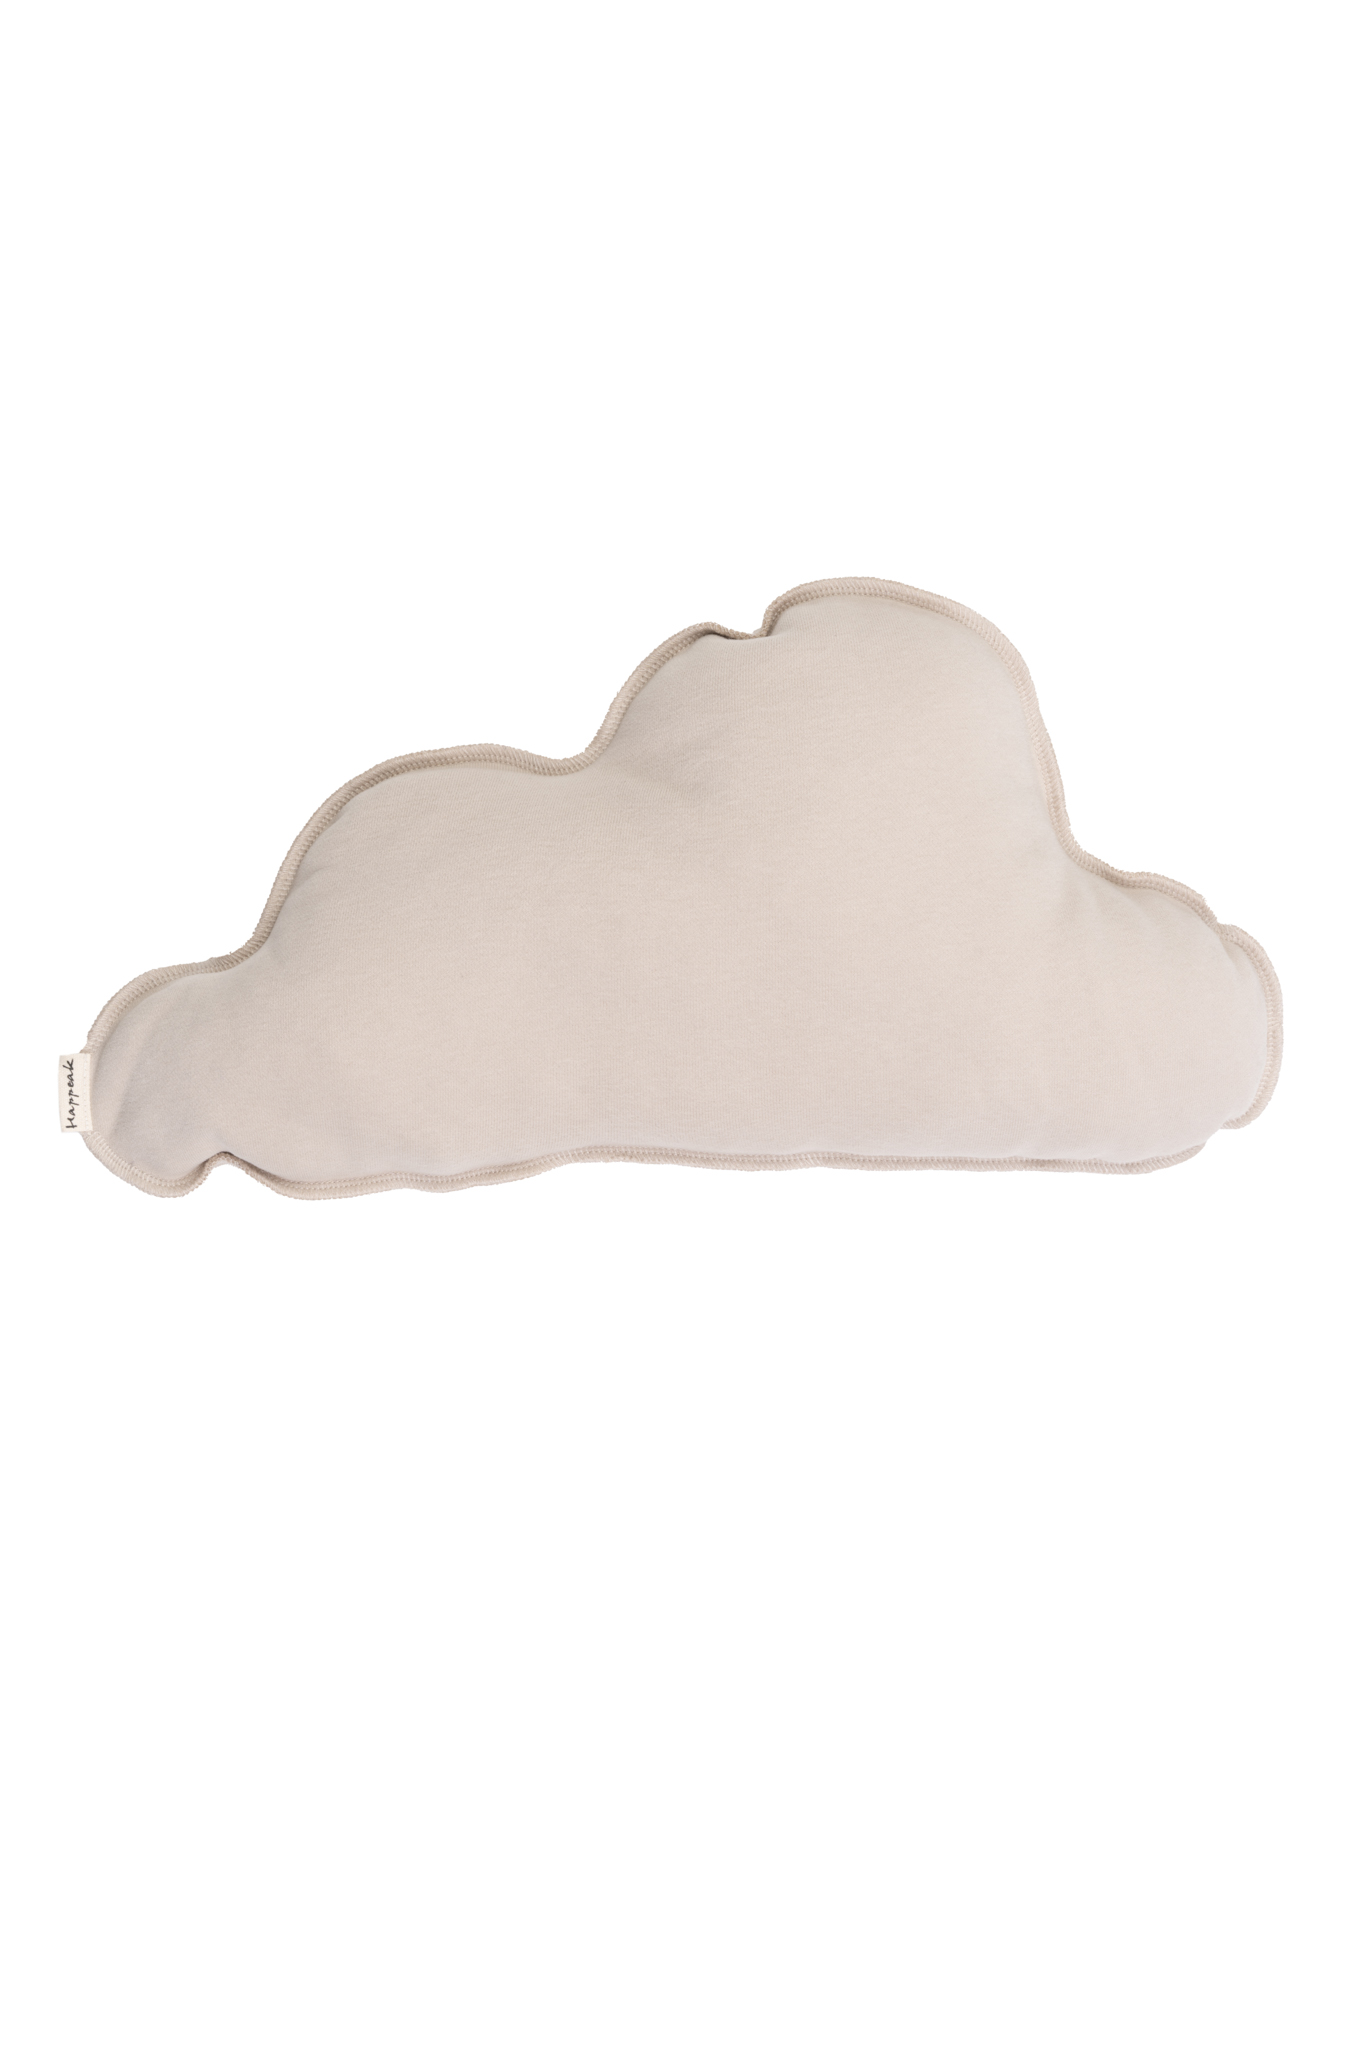 Cloud shape pillow SUMMER SALE  - 4